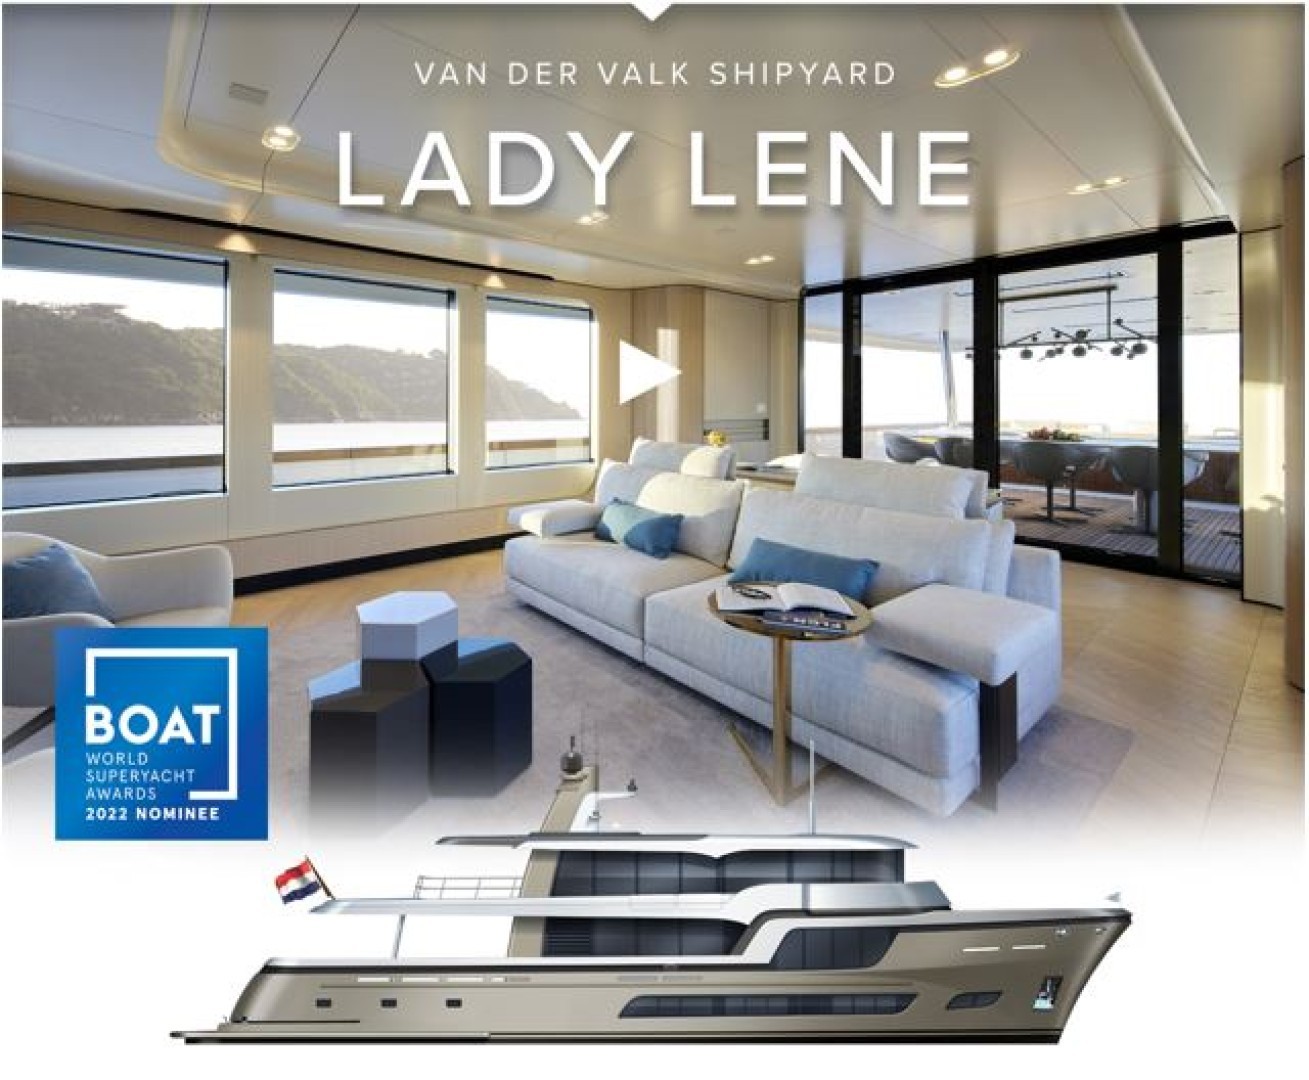 Lady Lene nominee at 2022 World Superyacht Awards